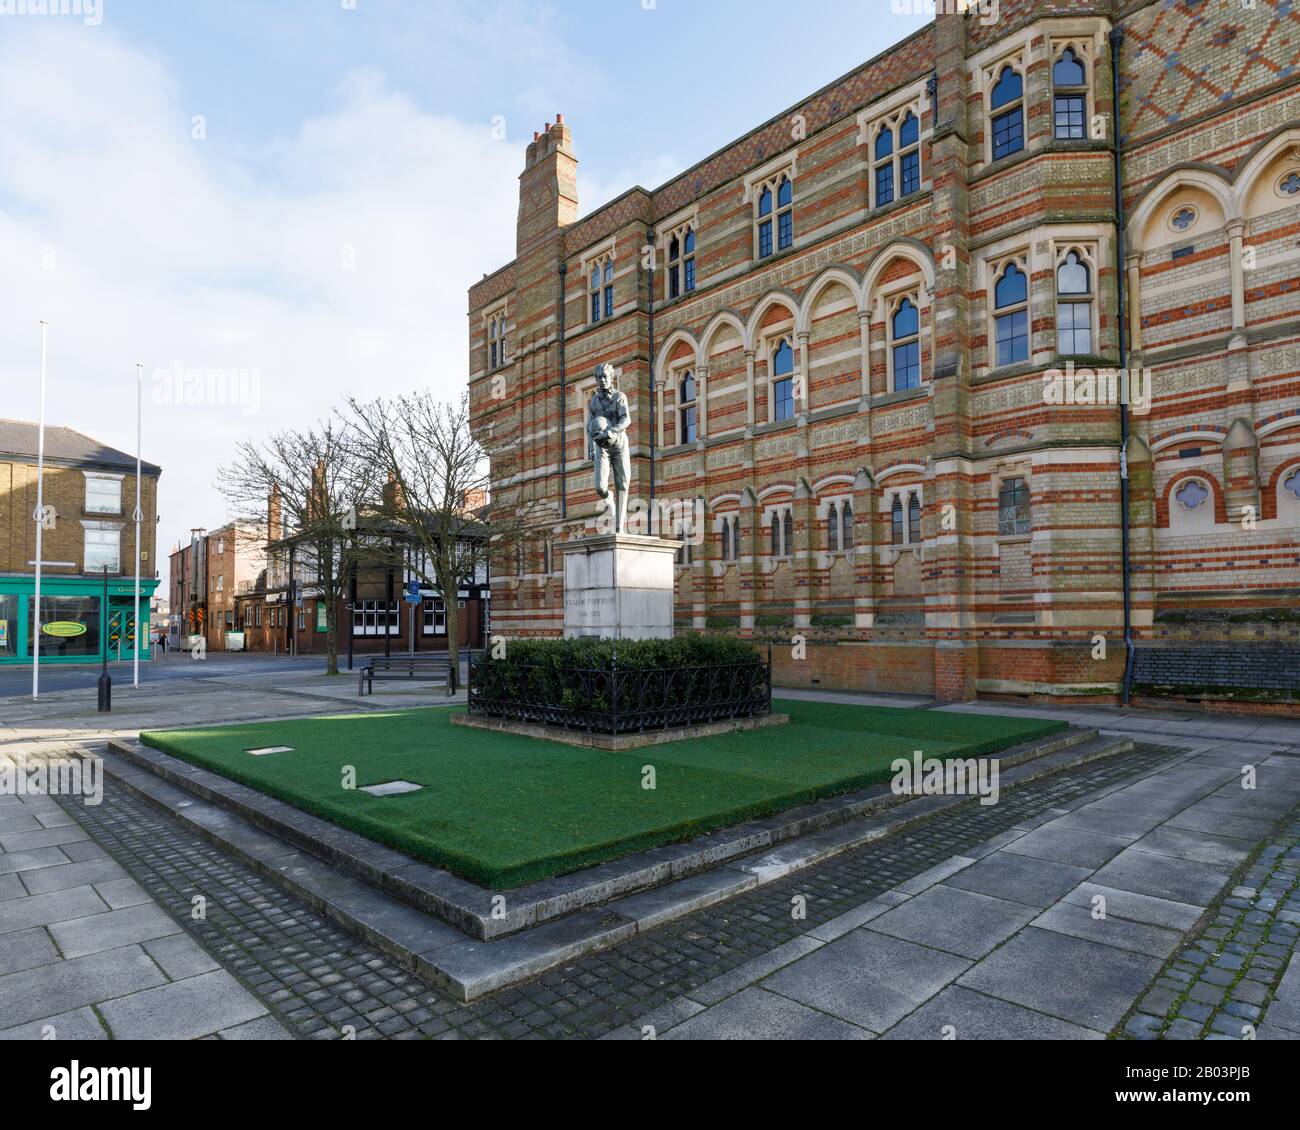 Rugby, Großbritannien, Februar 2020: Statue von William Webb Ellis, der außerhalb der Rugby School steht, wo er einen Ball aufgenommen und das Spiel erschaffen haben soll. Stockfoto